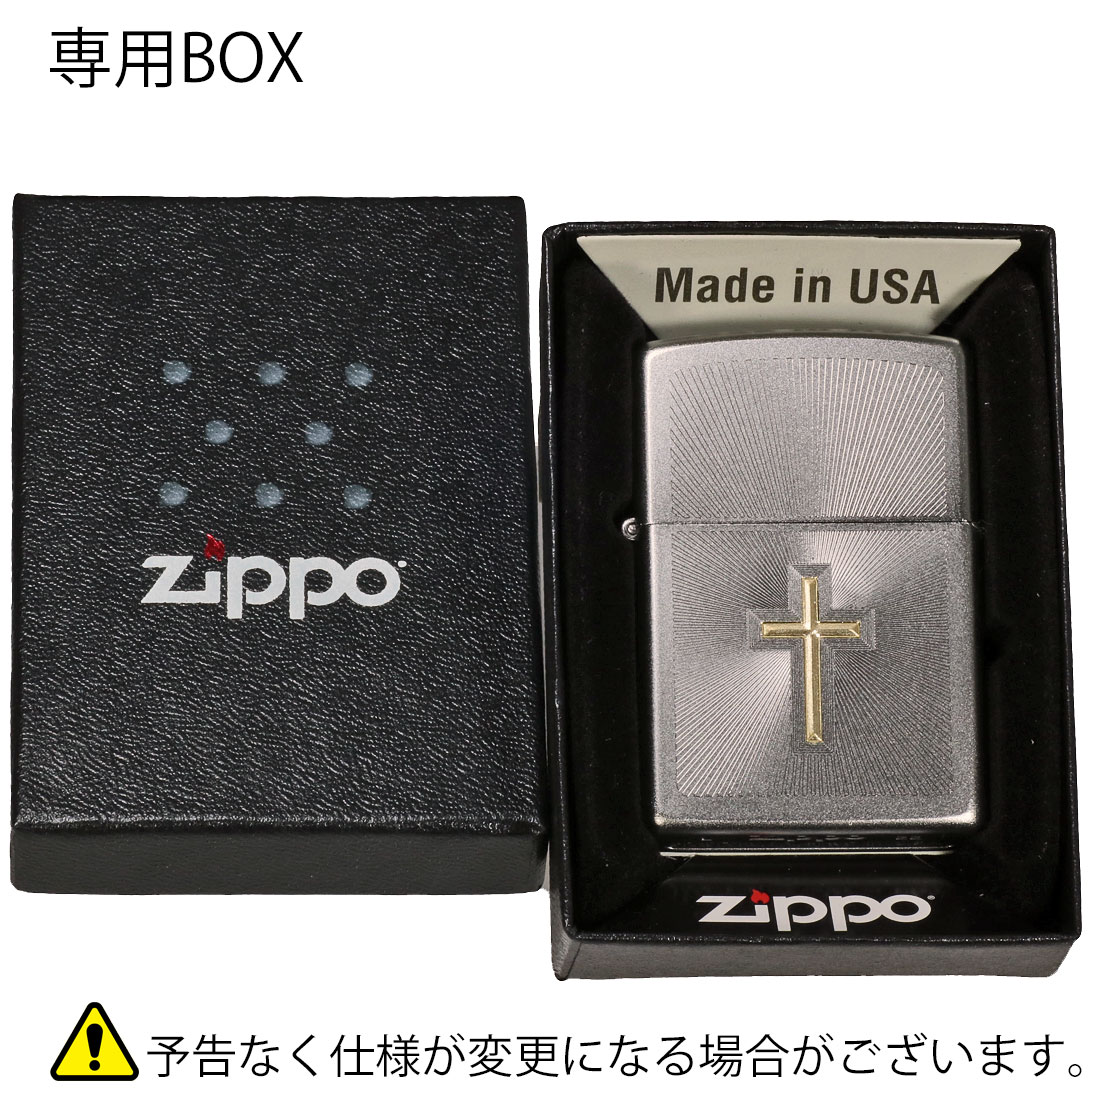 zippo(ジッポーライター)205クロスデザイン　Cross Design　サテンクローム　2023モデル #48581 シンプル カッコイイ　 ギフト 送料無料（ネコポス対応）